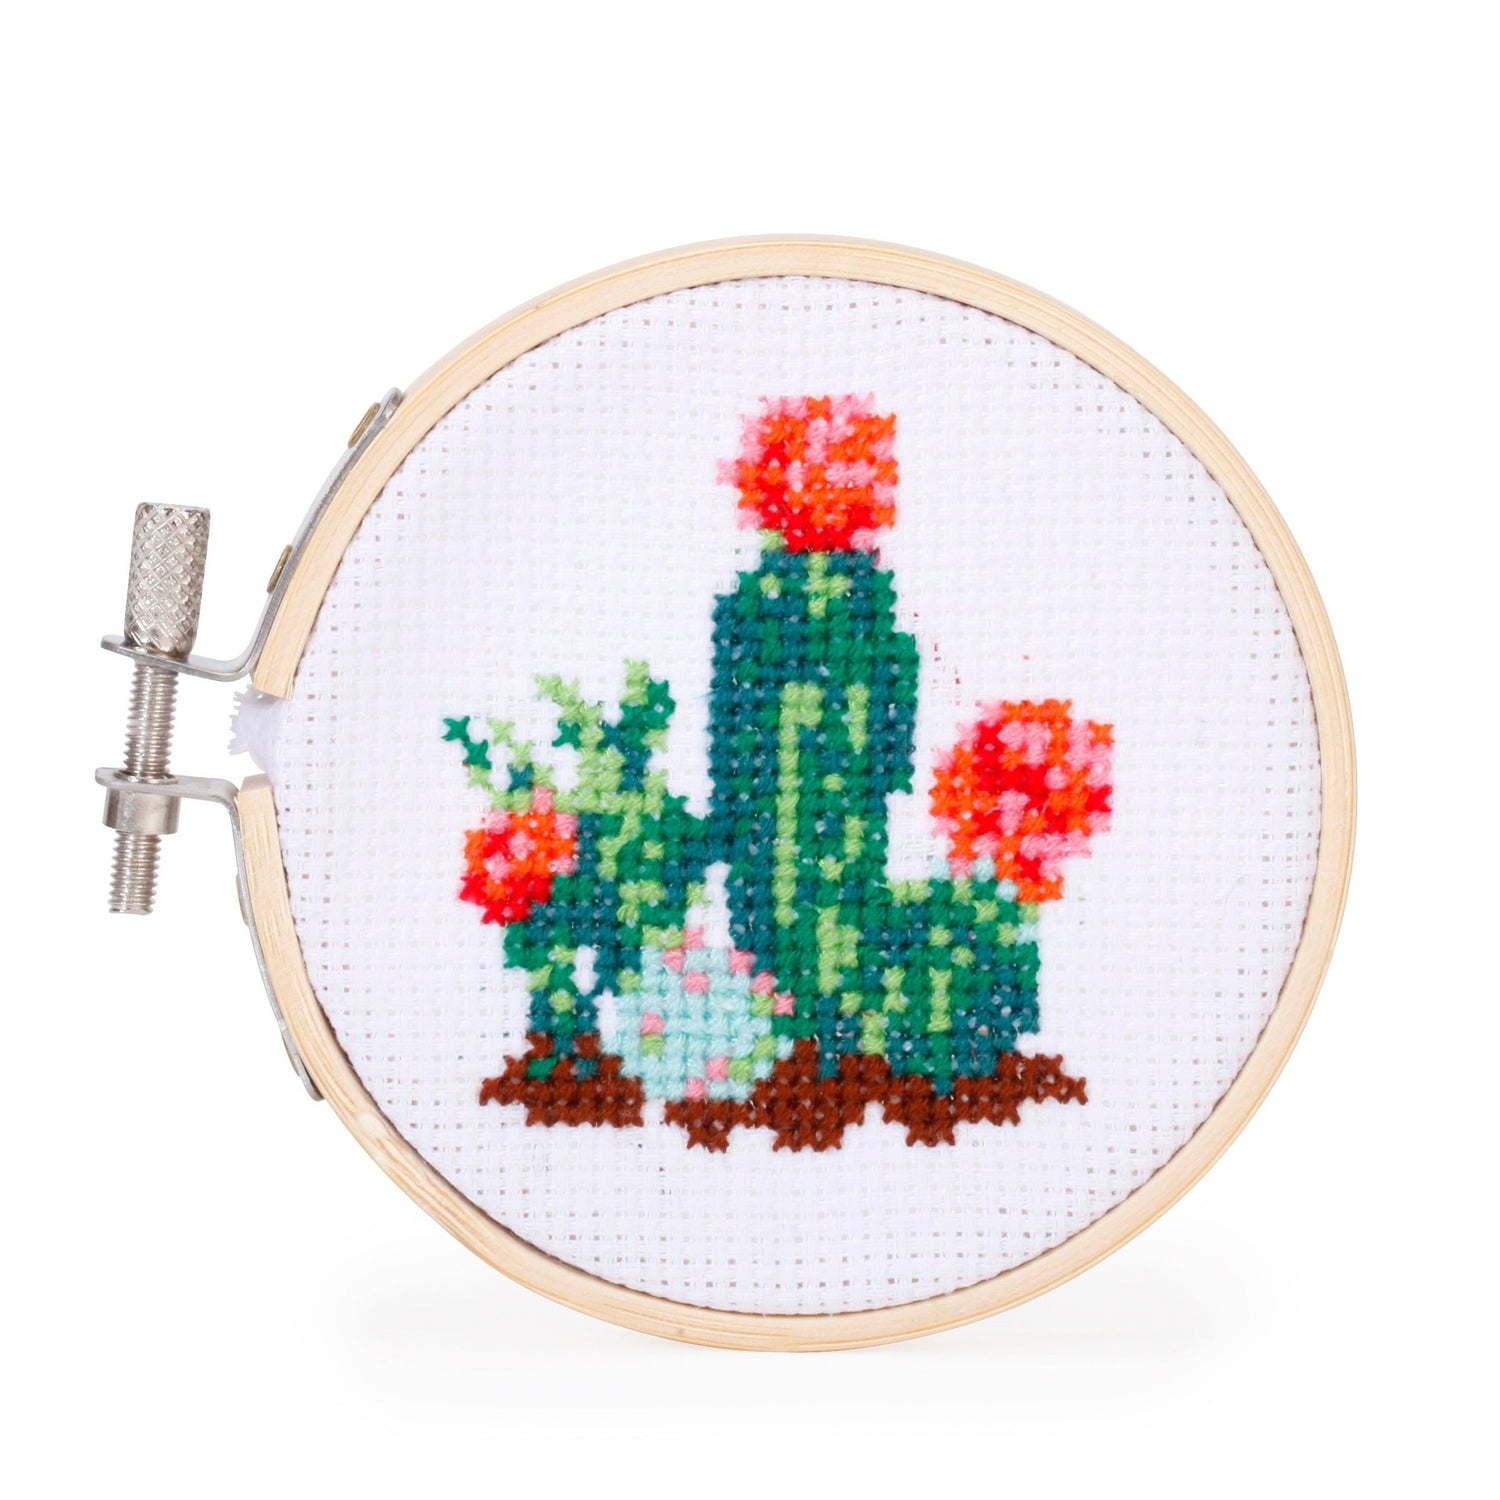 Kikkerland Mini Cross Stitch Embroidery Kits